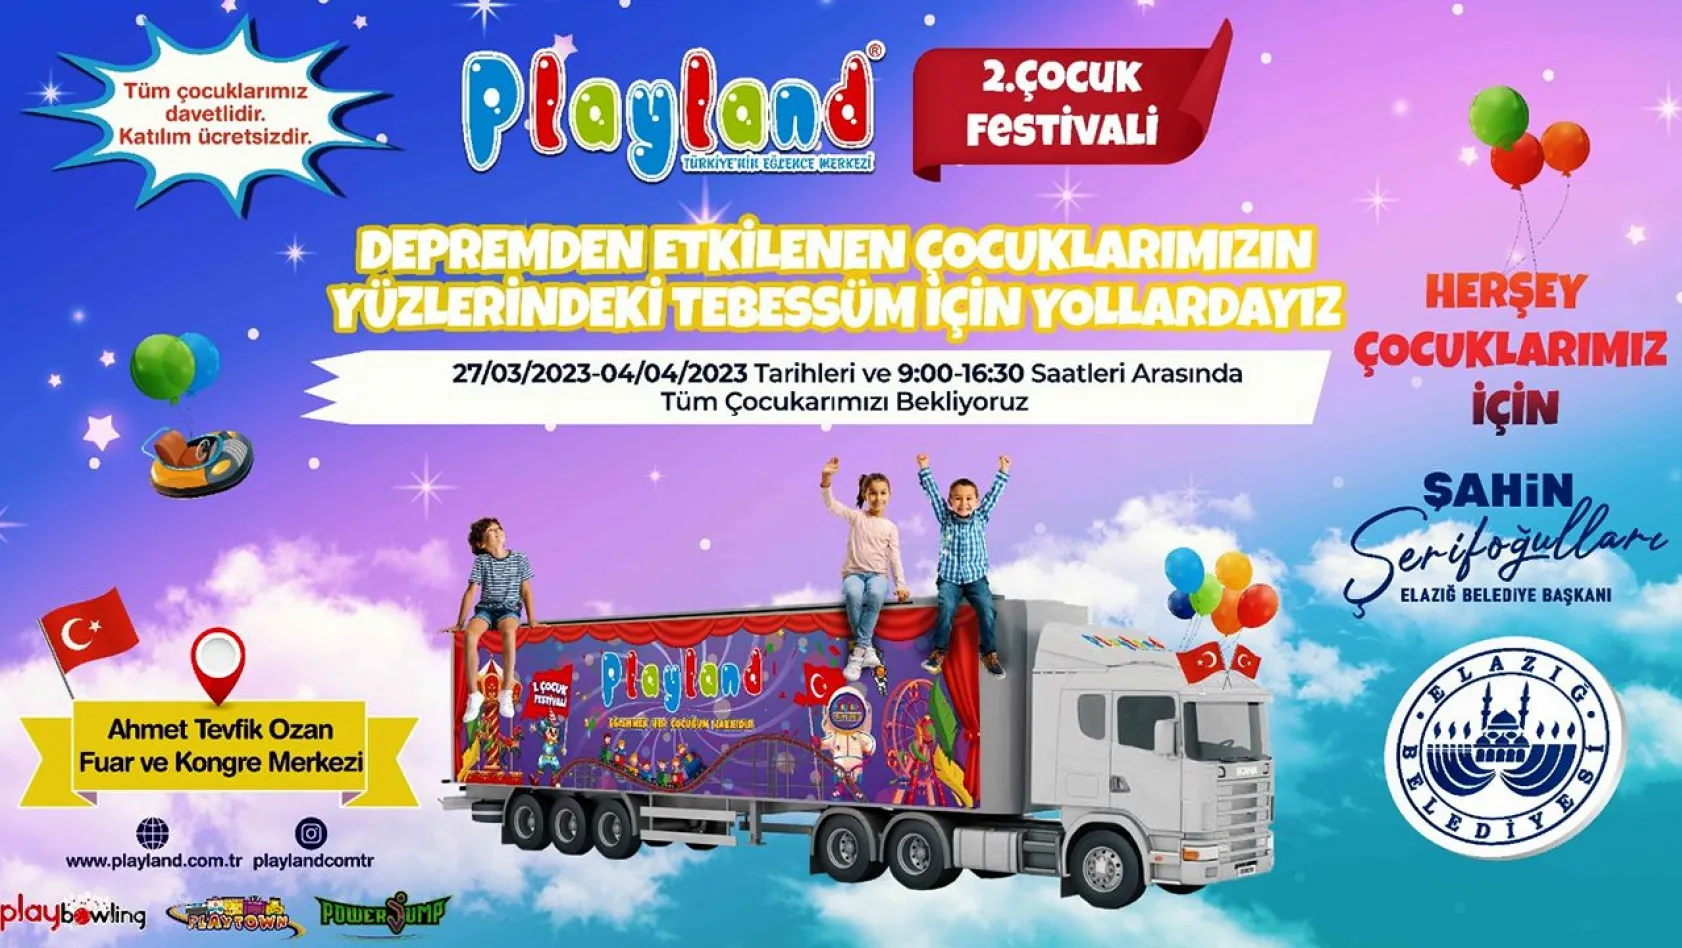 Elazığ'da 'Çocuk Festivali' düzenlenecek